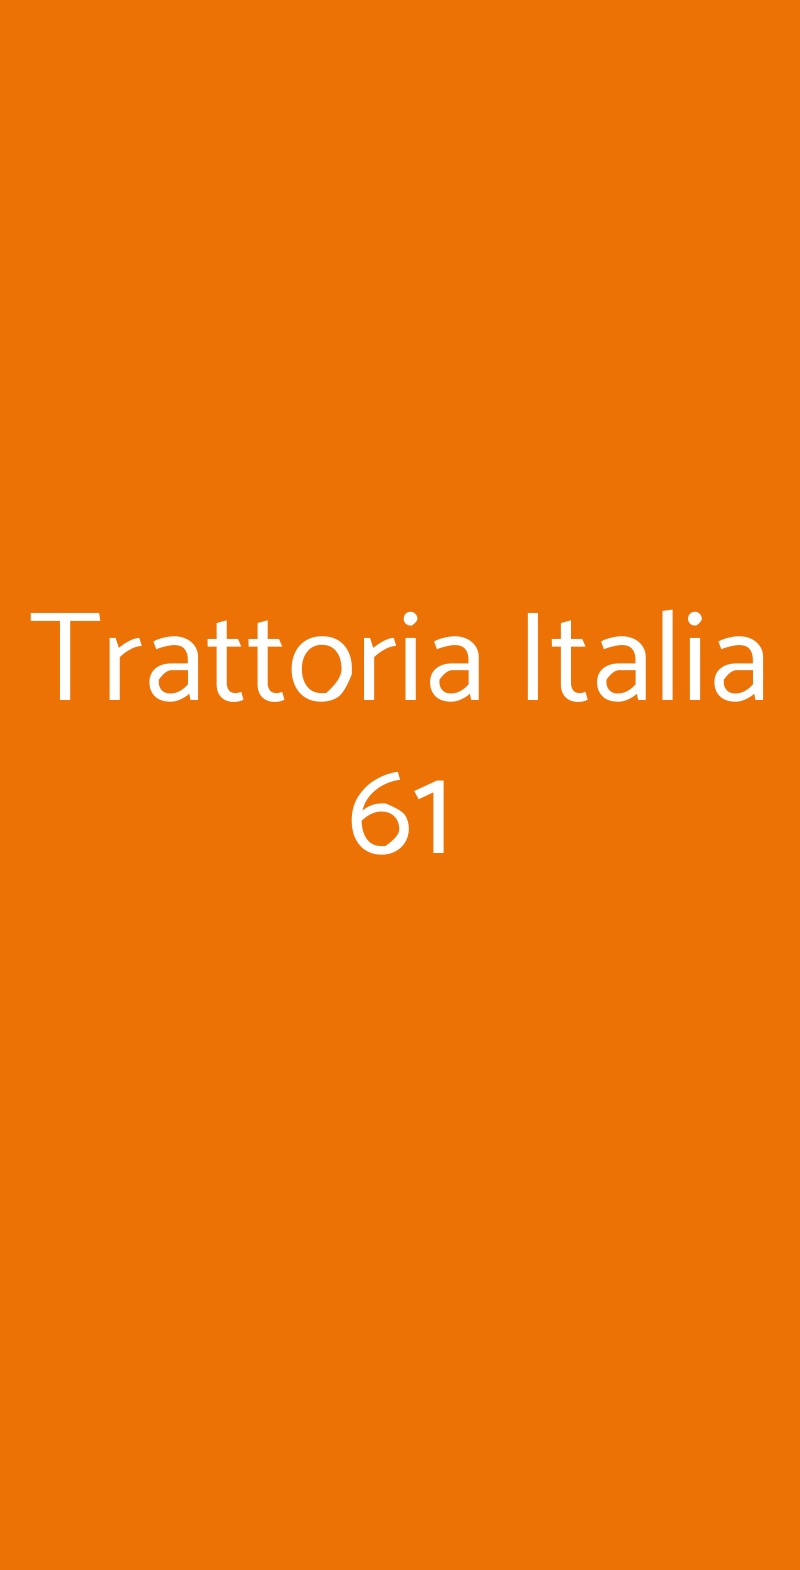 Trattoria Italia 61 Narni menù 1 pagina